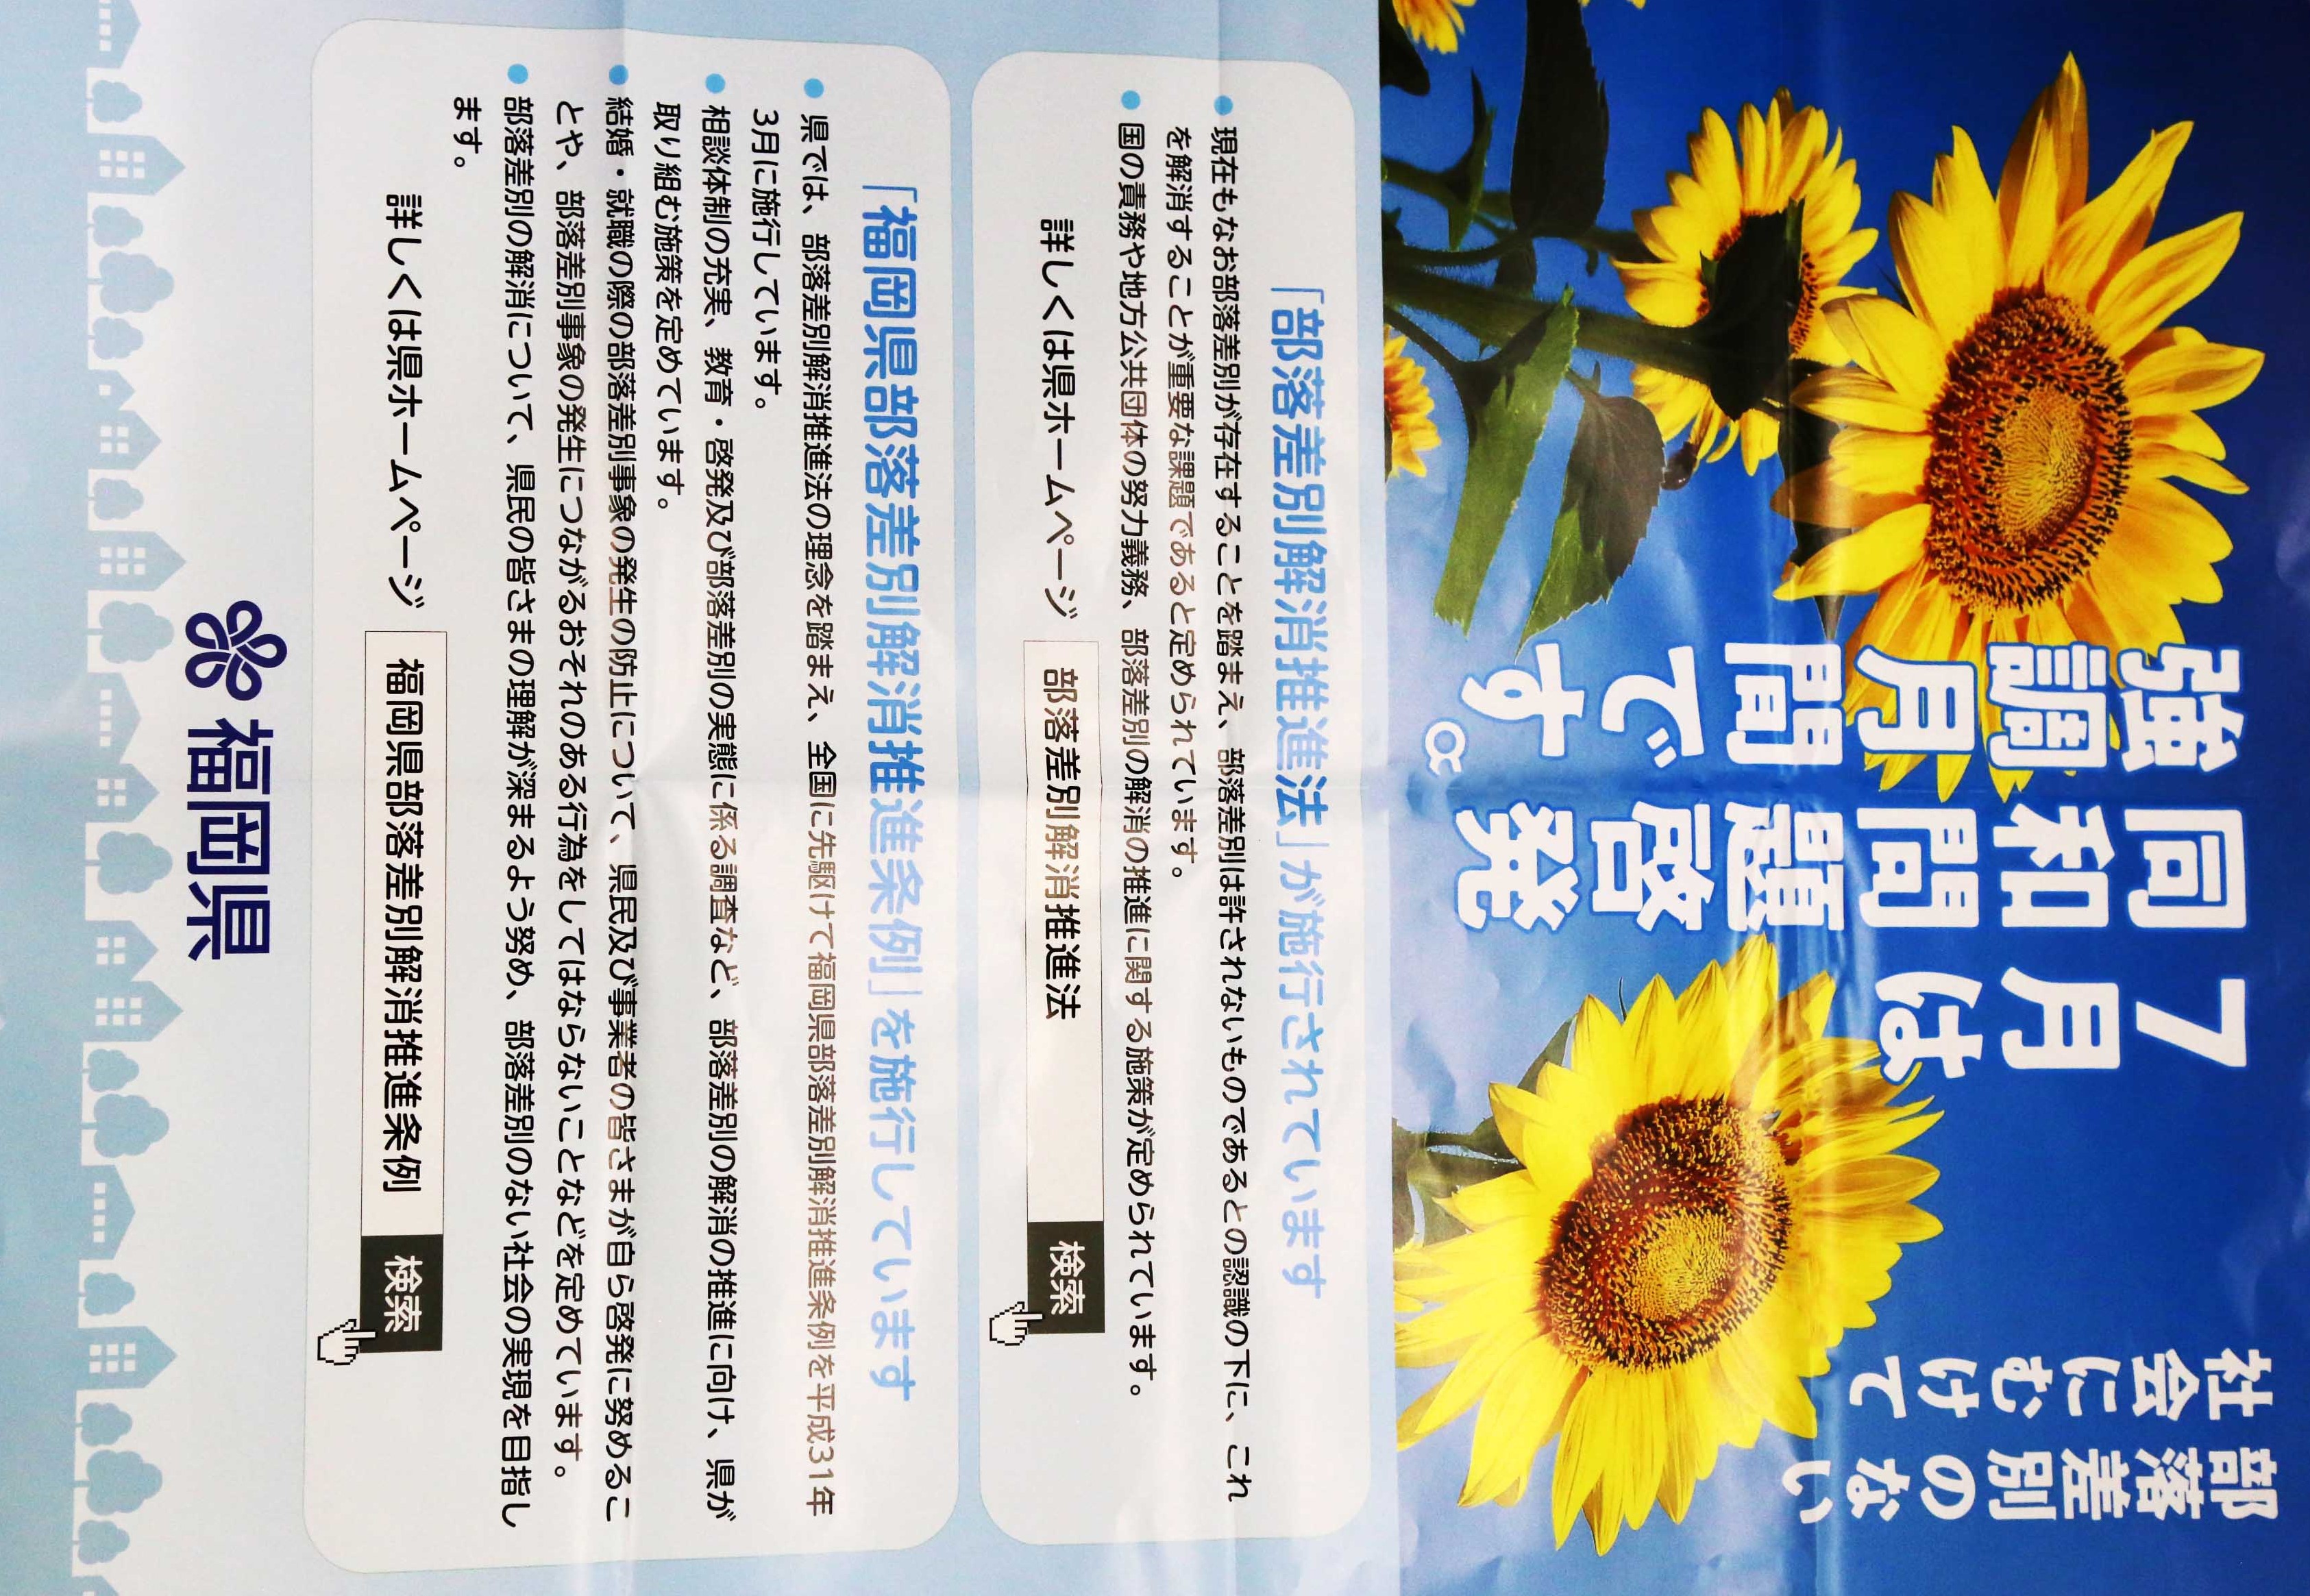 福岡県同和問題啓発強調月間のポスター